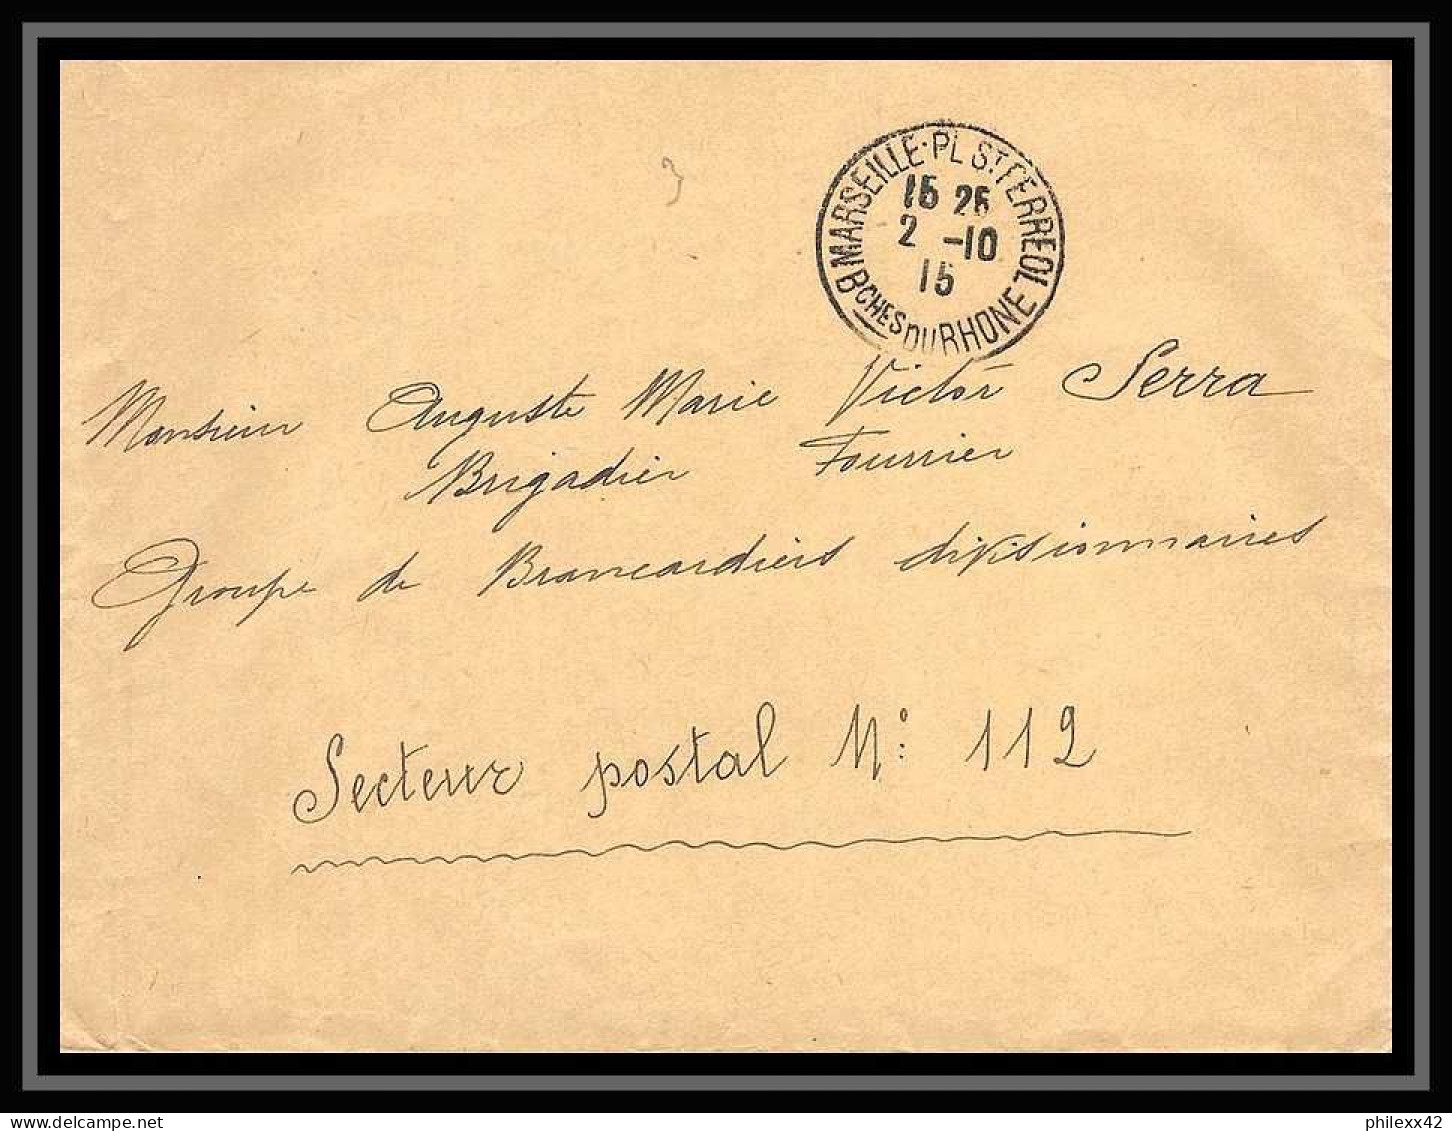 108473 lot de 21 Lettres dont recommandés Bouches du rhone Marseille saint ferréol